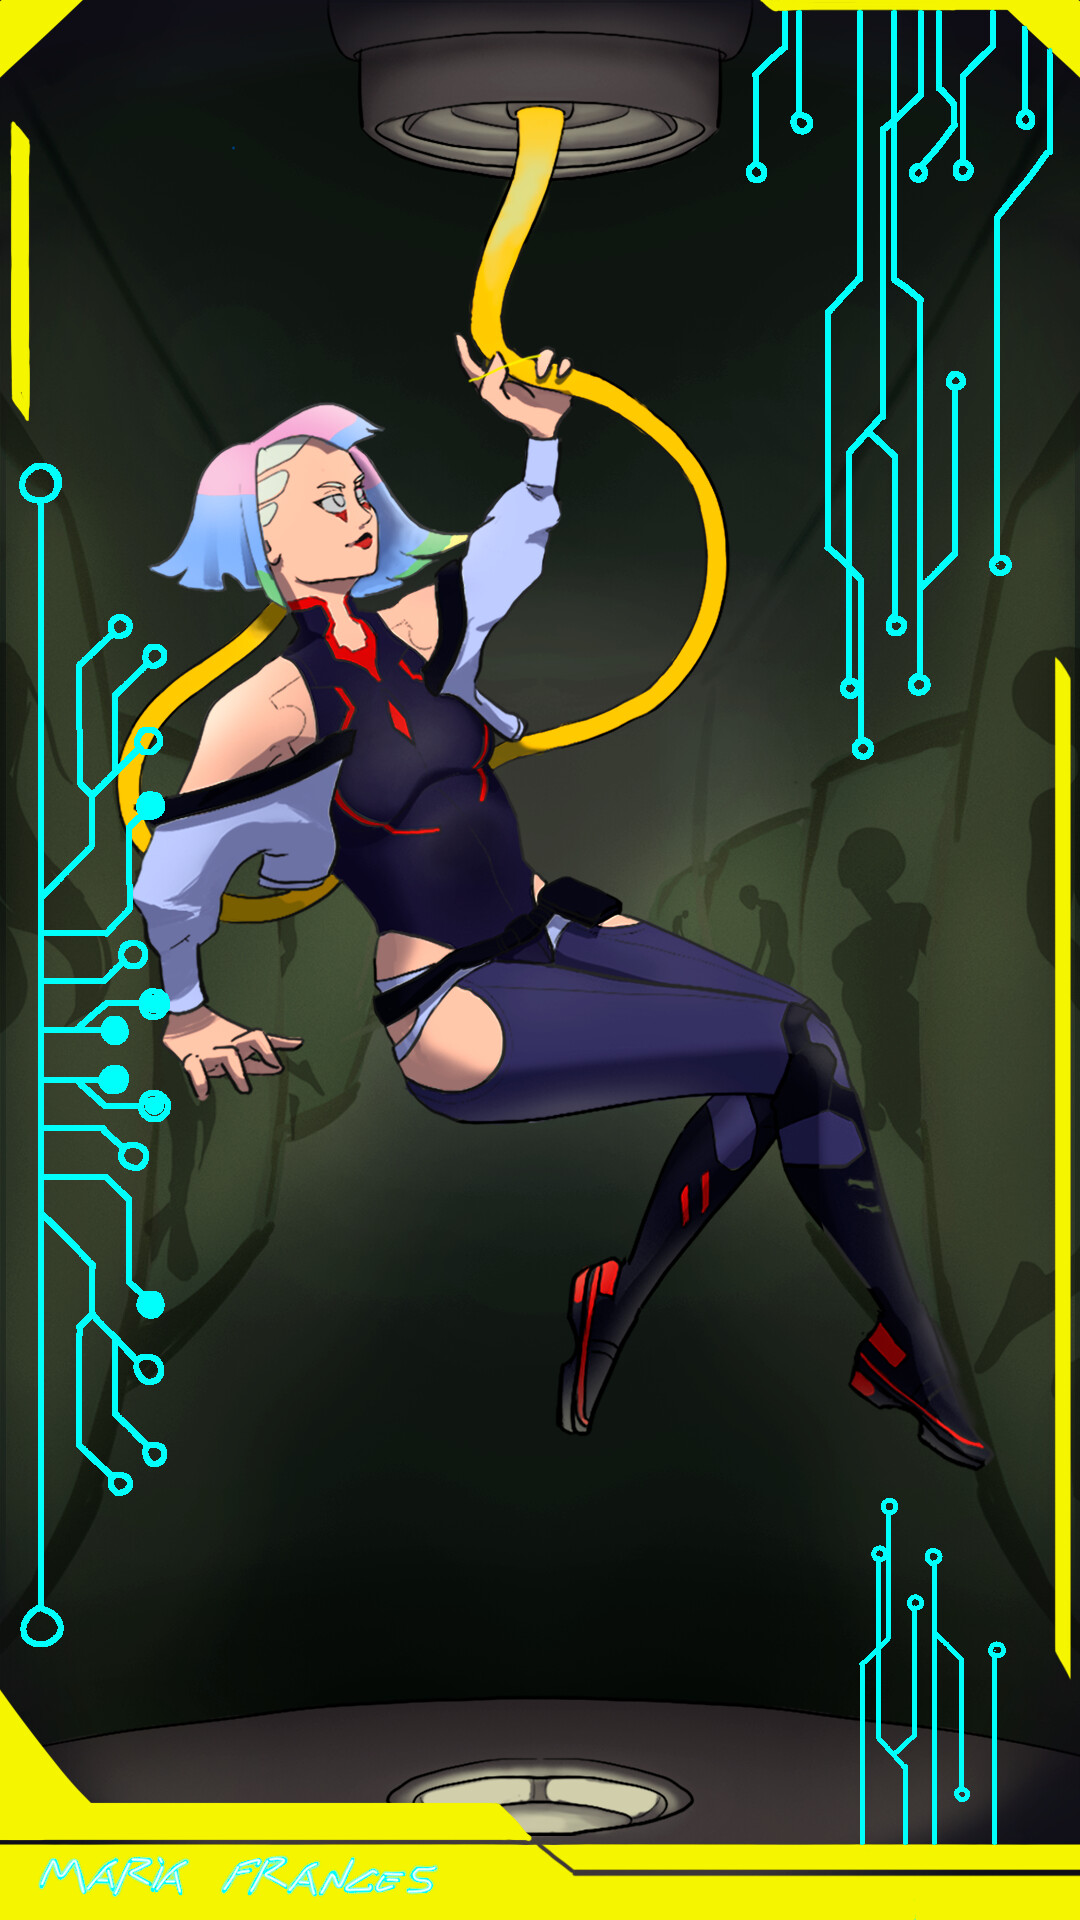 ArtStation - Lucy, Cyberpunk Edgerunners